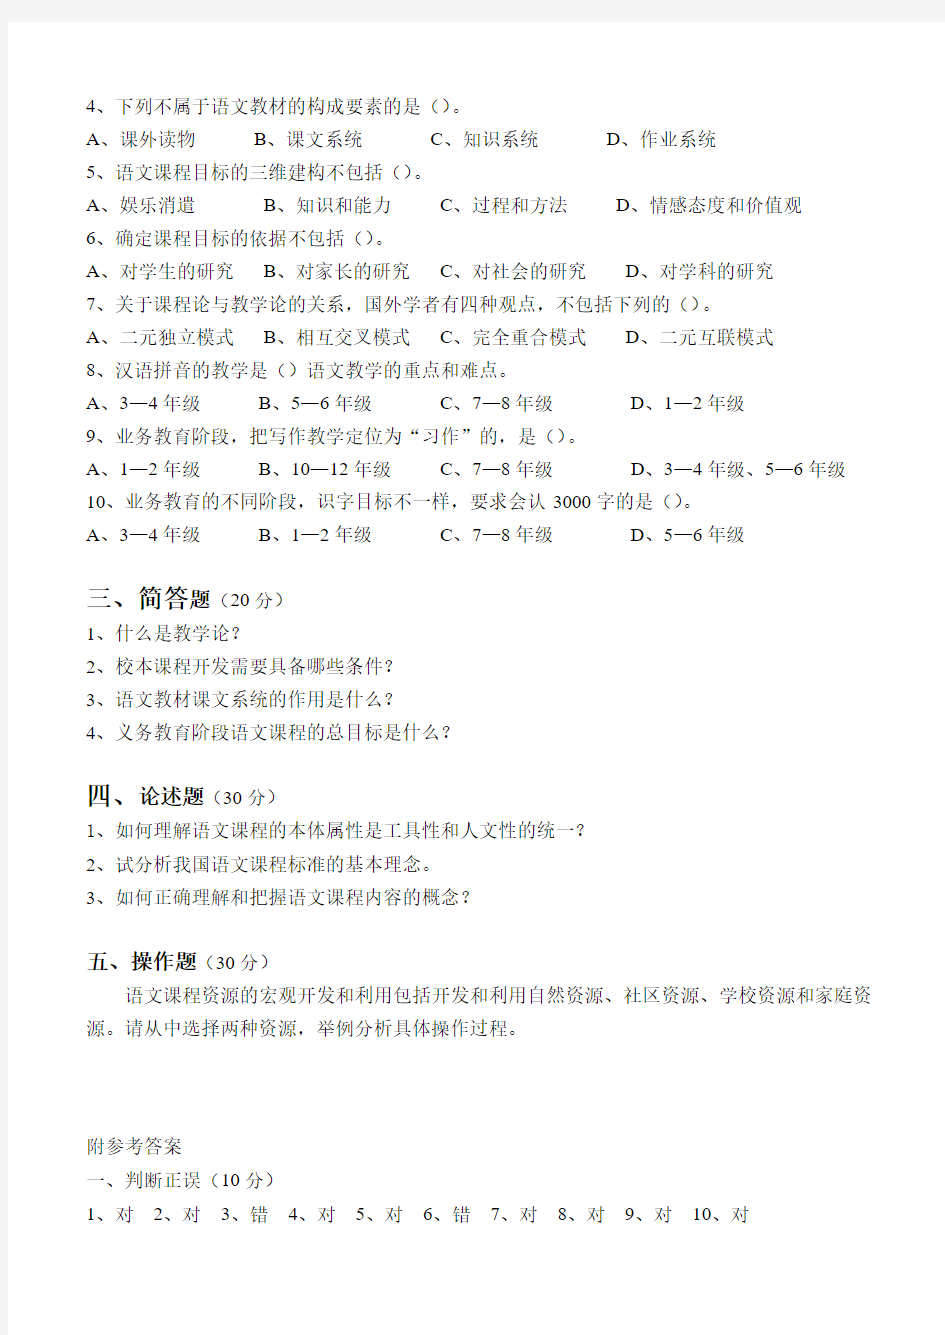 2019中学语文教学法测试模拟试题(六套)